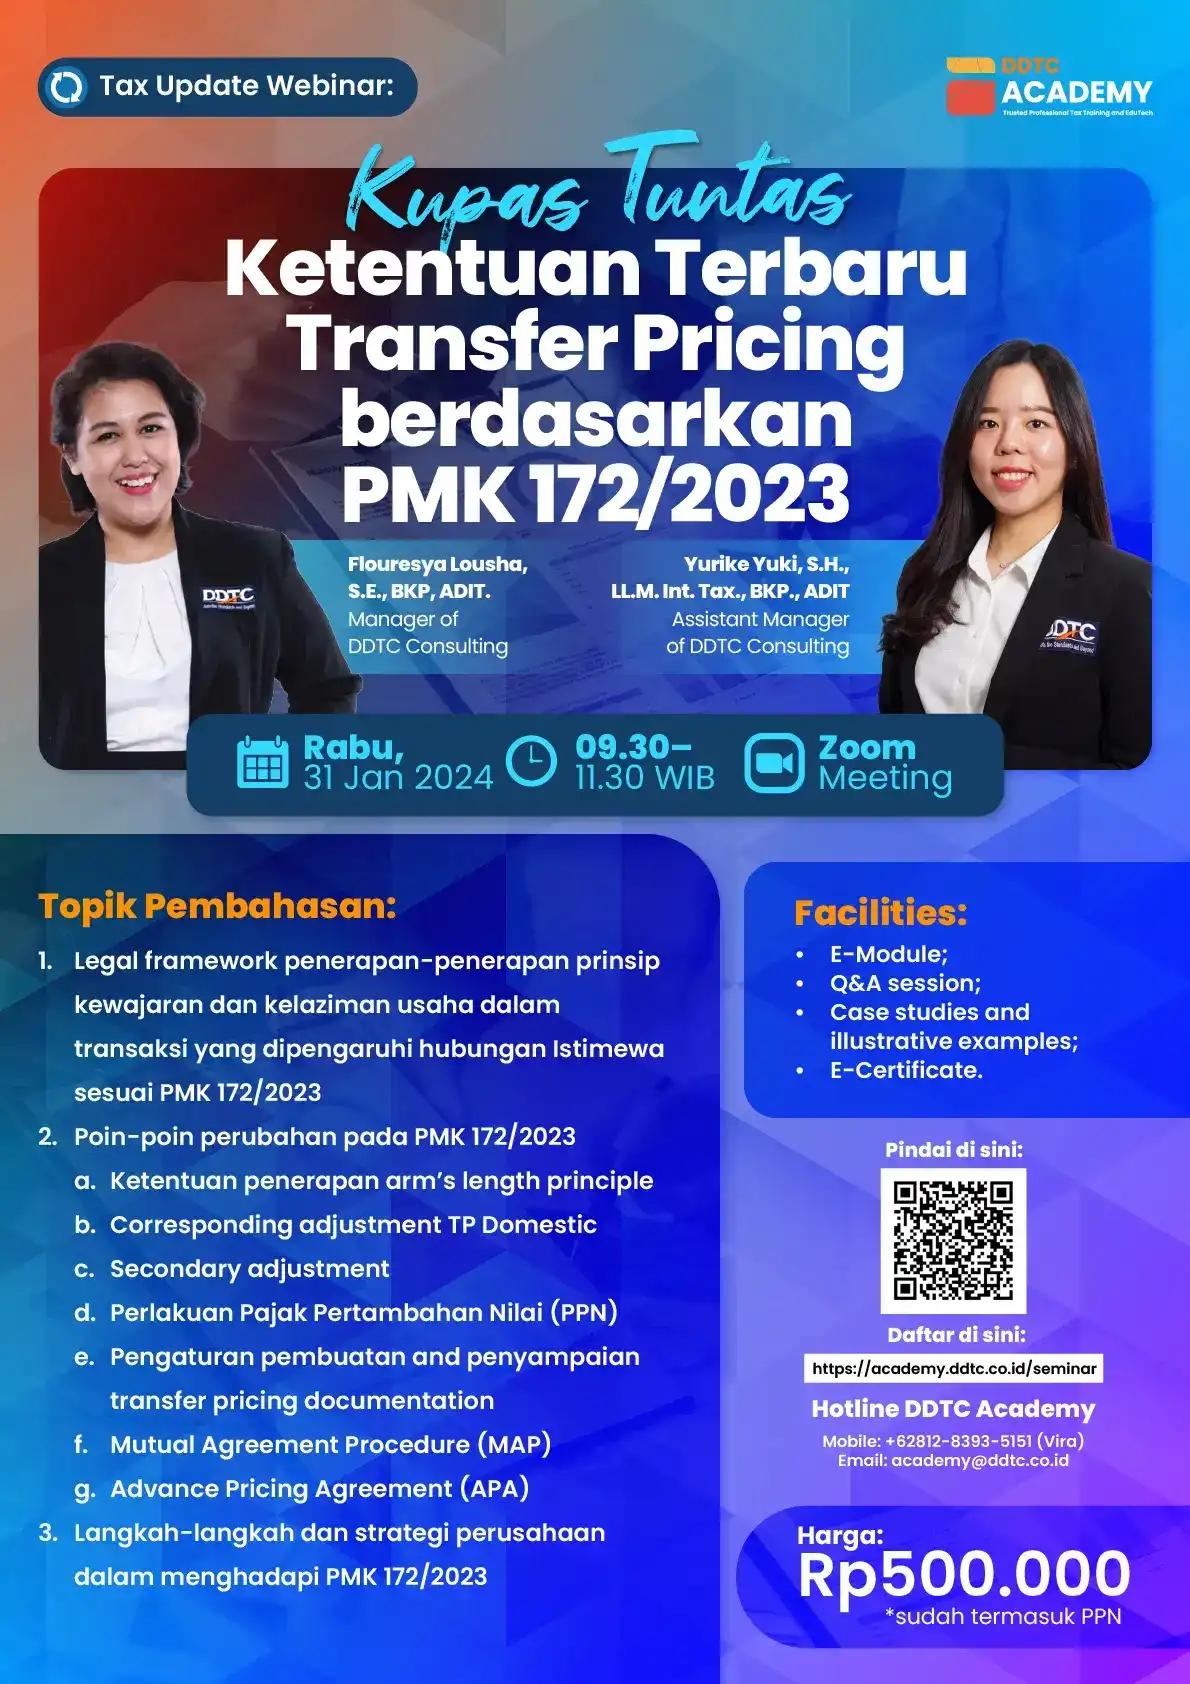 Kupas Tuntas Aturan Terbaru TP sesuai PMK 172/2023, Ikuti Webinar Ini!